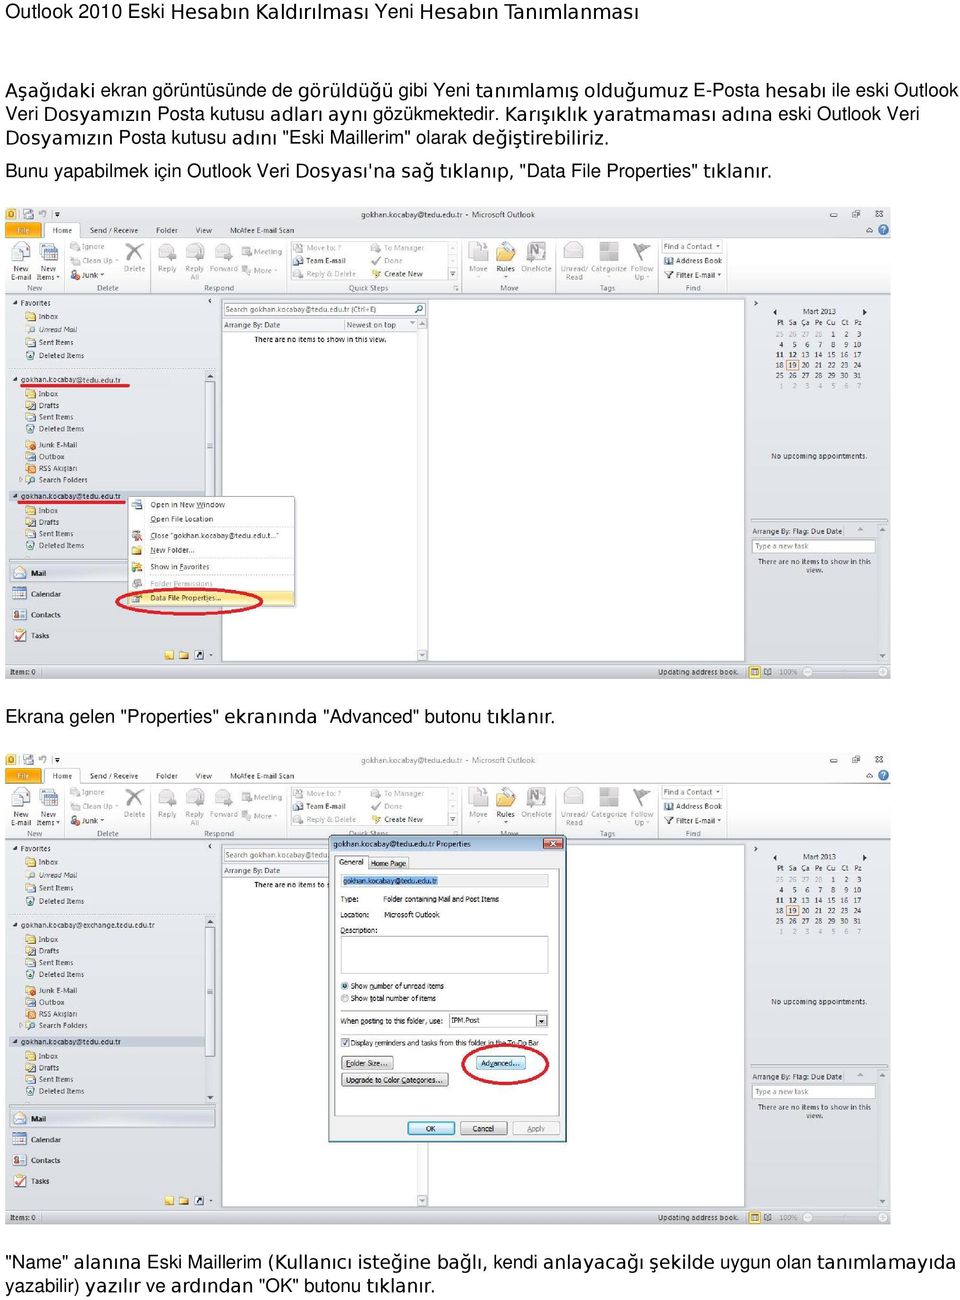 Bunu yapabilmek için Outlook Veri Dosyası'na sağ tıklanıp, "Data File Properties" tıklanır.